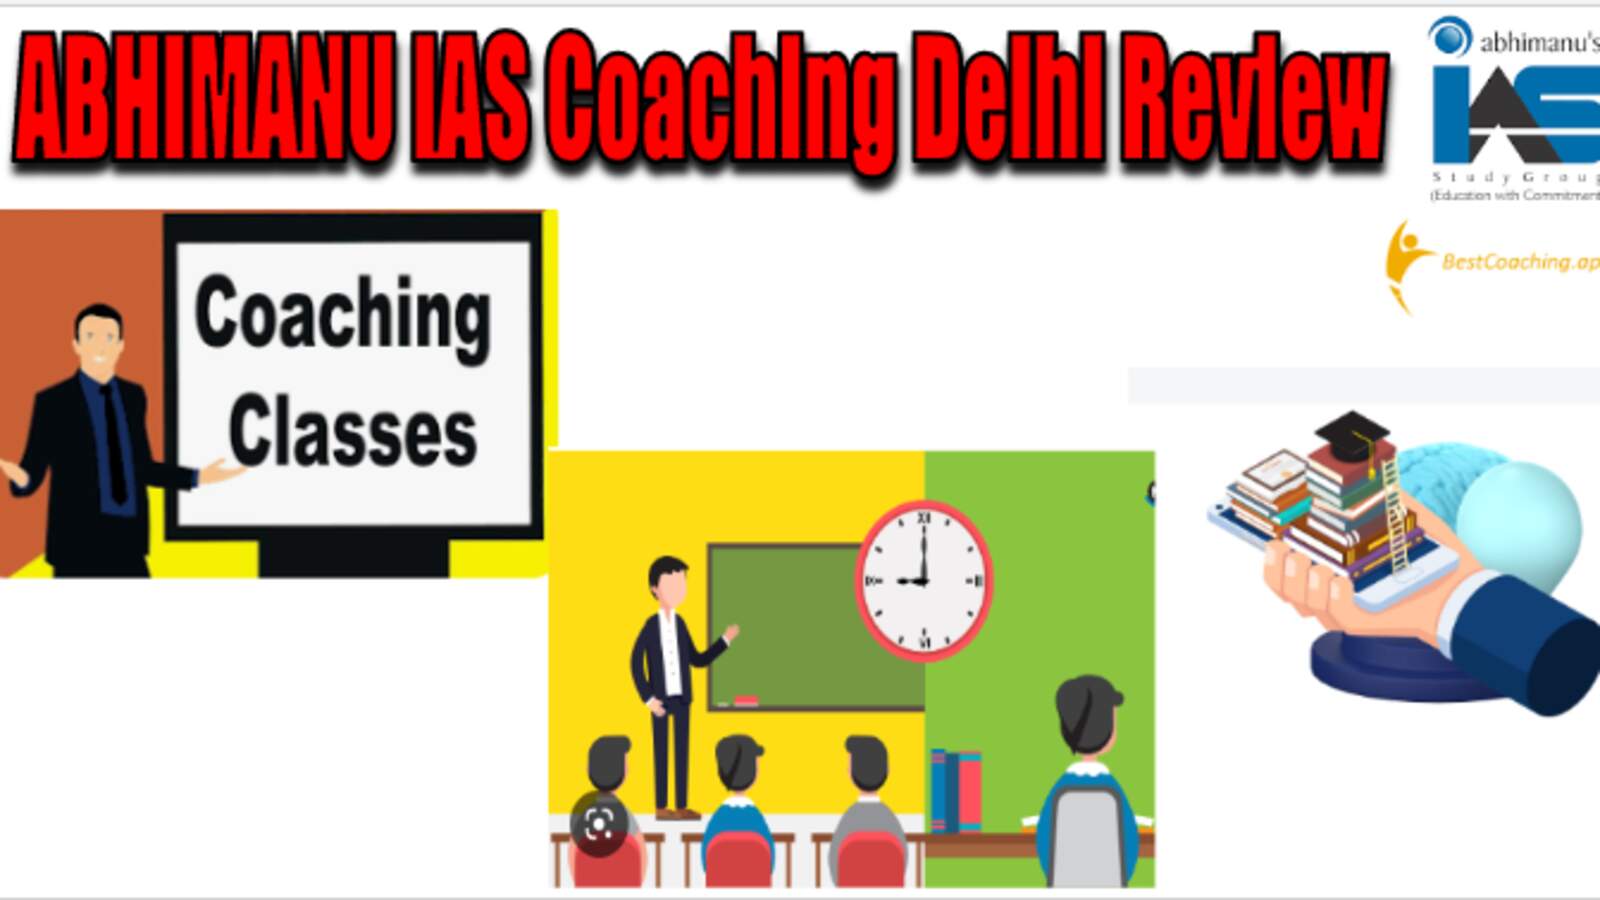 ABHIMANU IAS Coaching Delhi Review